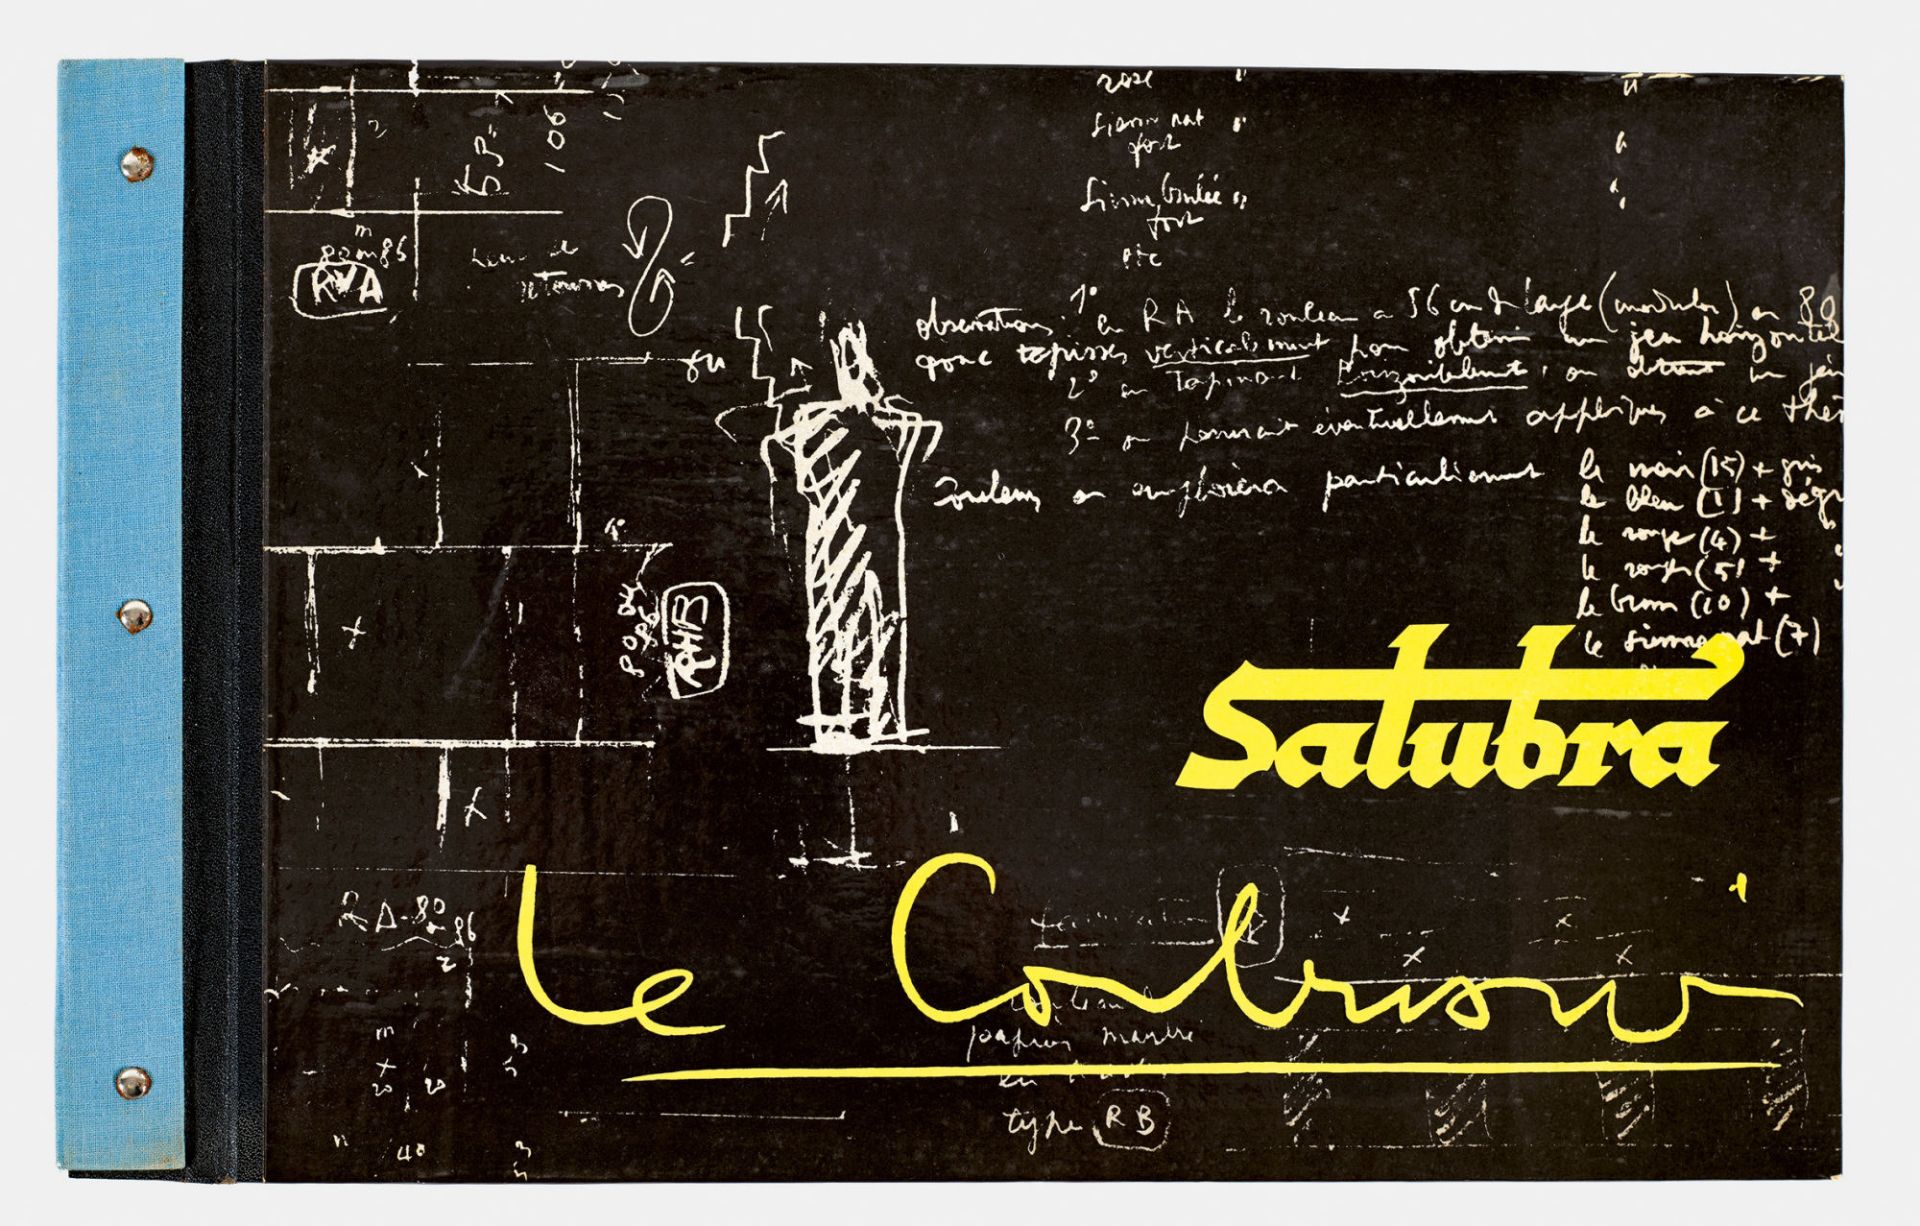 LE CORBUSIER (EIGTL. JEANNERET, CHARLES-ÉDOUARD): "La deuxième collection Salubra par Le Corbusier".